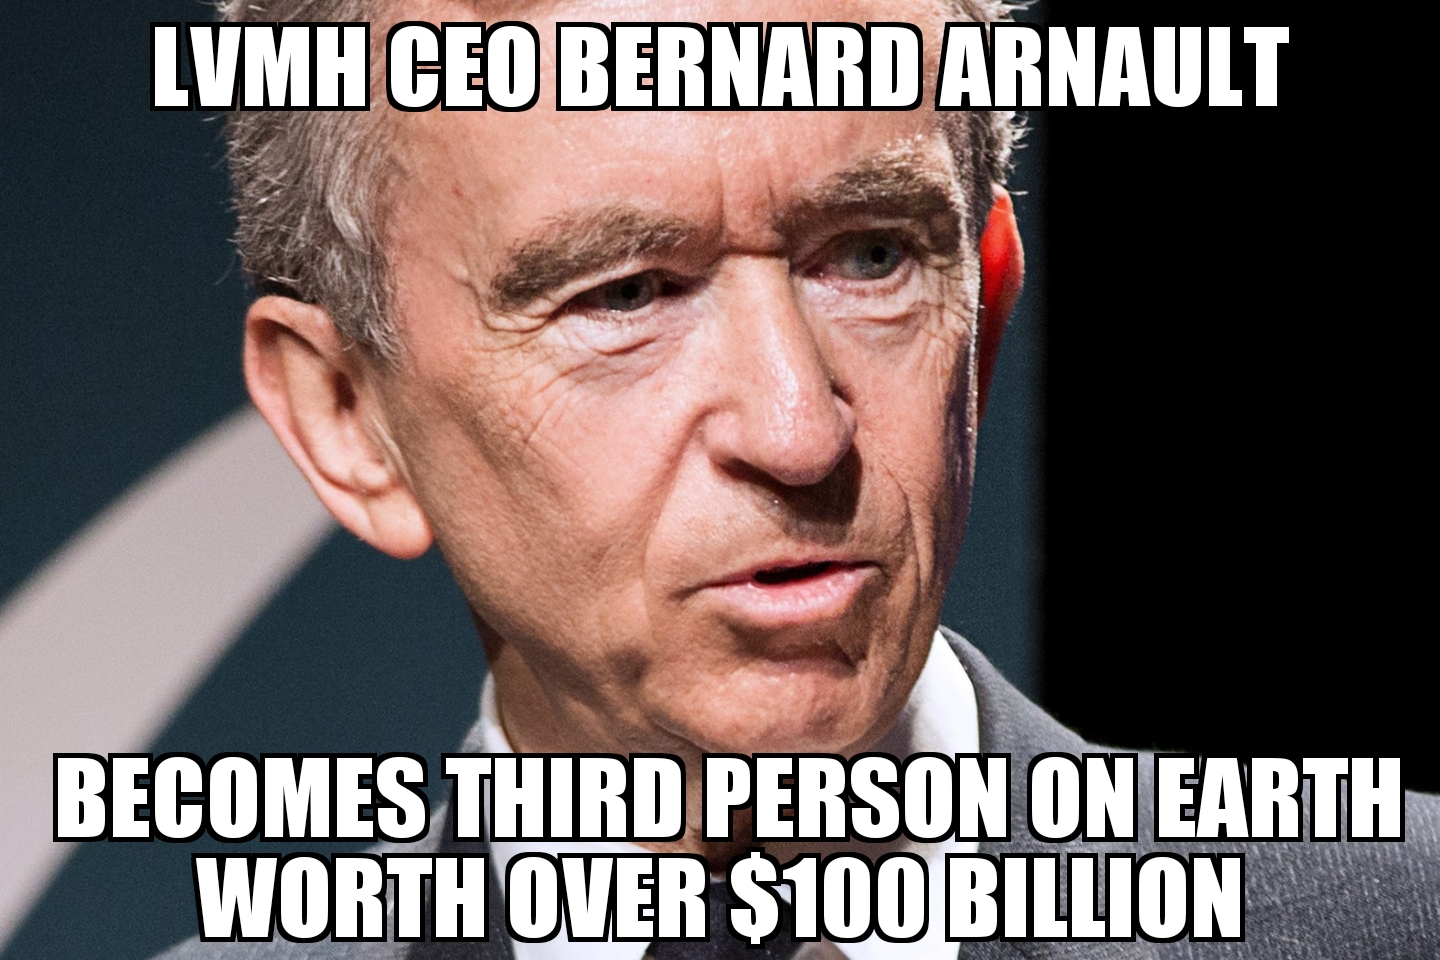 LVMH CEO Bernard Arnault becomes third 100 billionaire